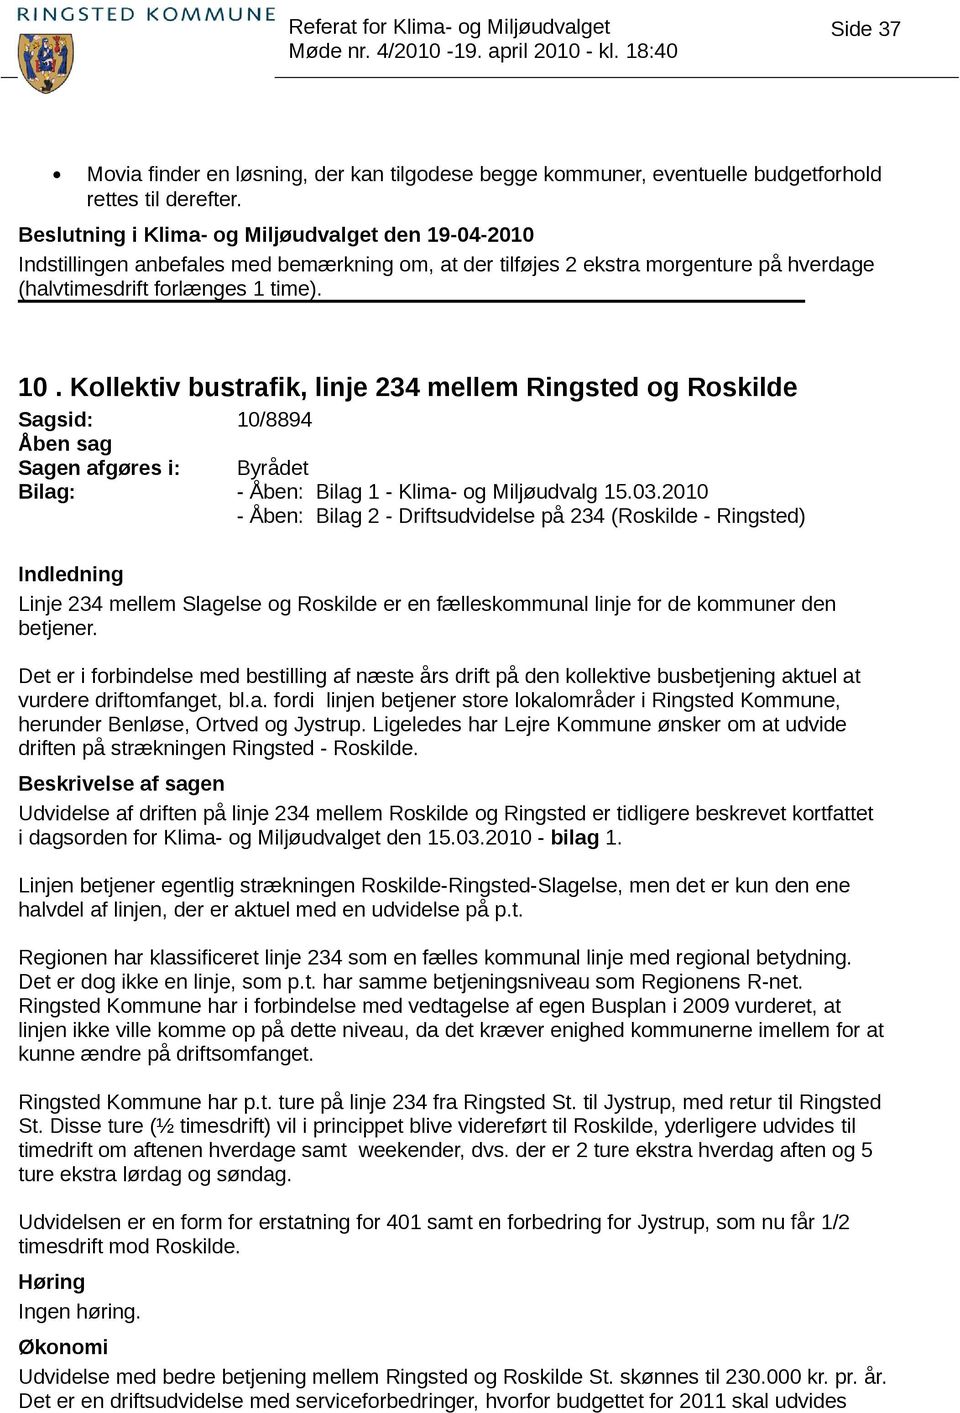 Kollektiv bustrafik, linje 234 mellem Ringsted og Roskilde Sagsid: 10/8894 Sagen afgøres i: Byrådet Bilag: - Åben: Bilag 1 - Klima- og Miljøudvalg 15.03.